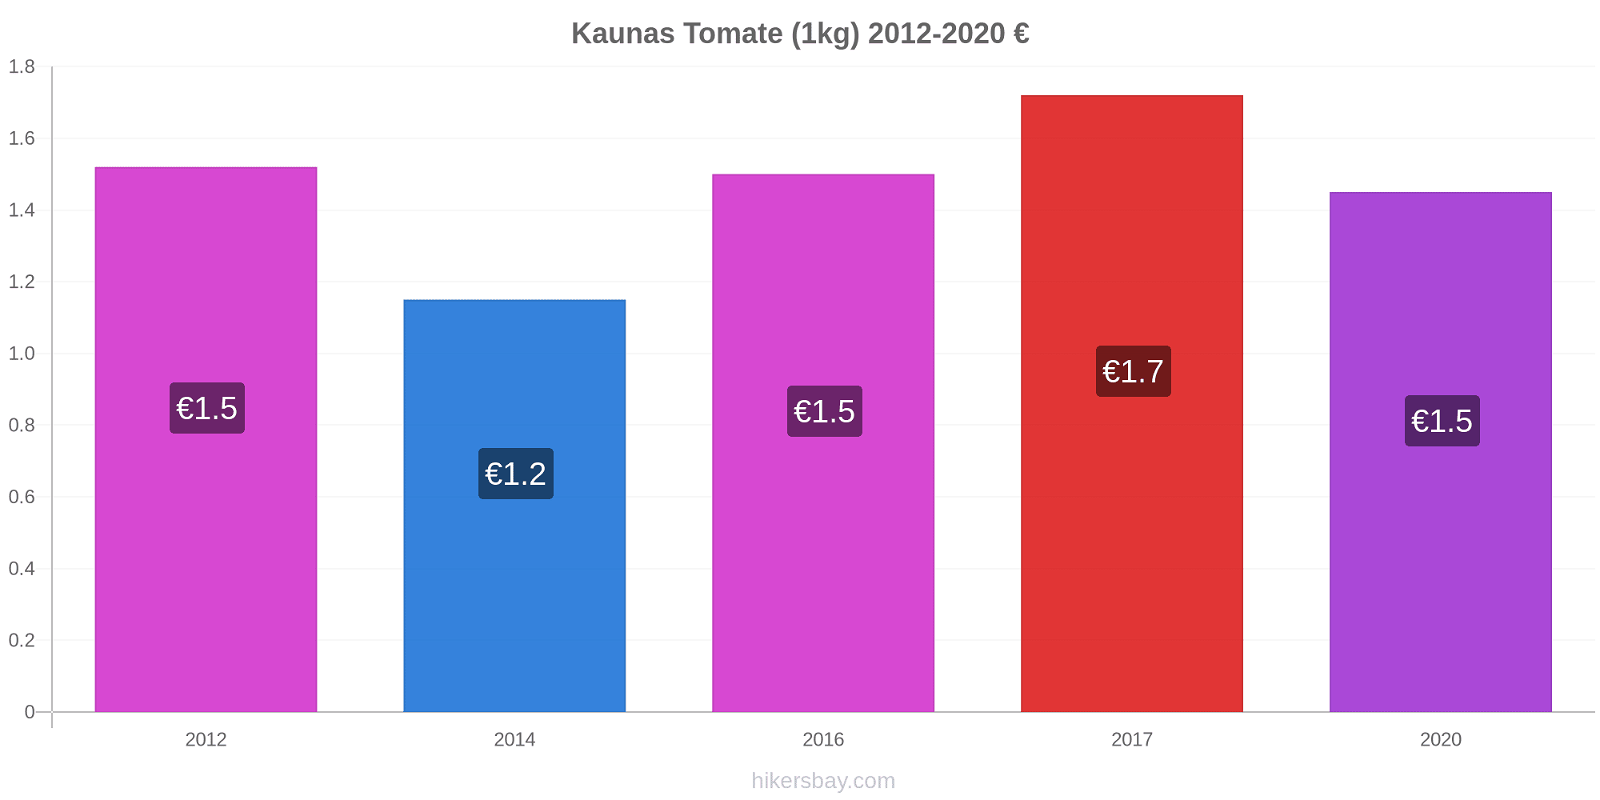 Kaunas variação de preço Tomate (1kg) hikersbay.com